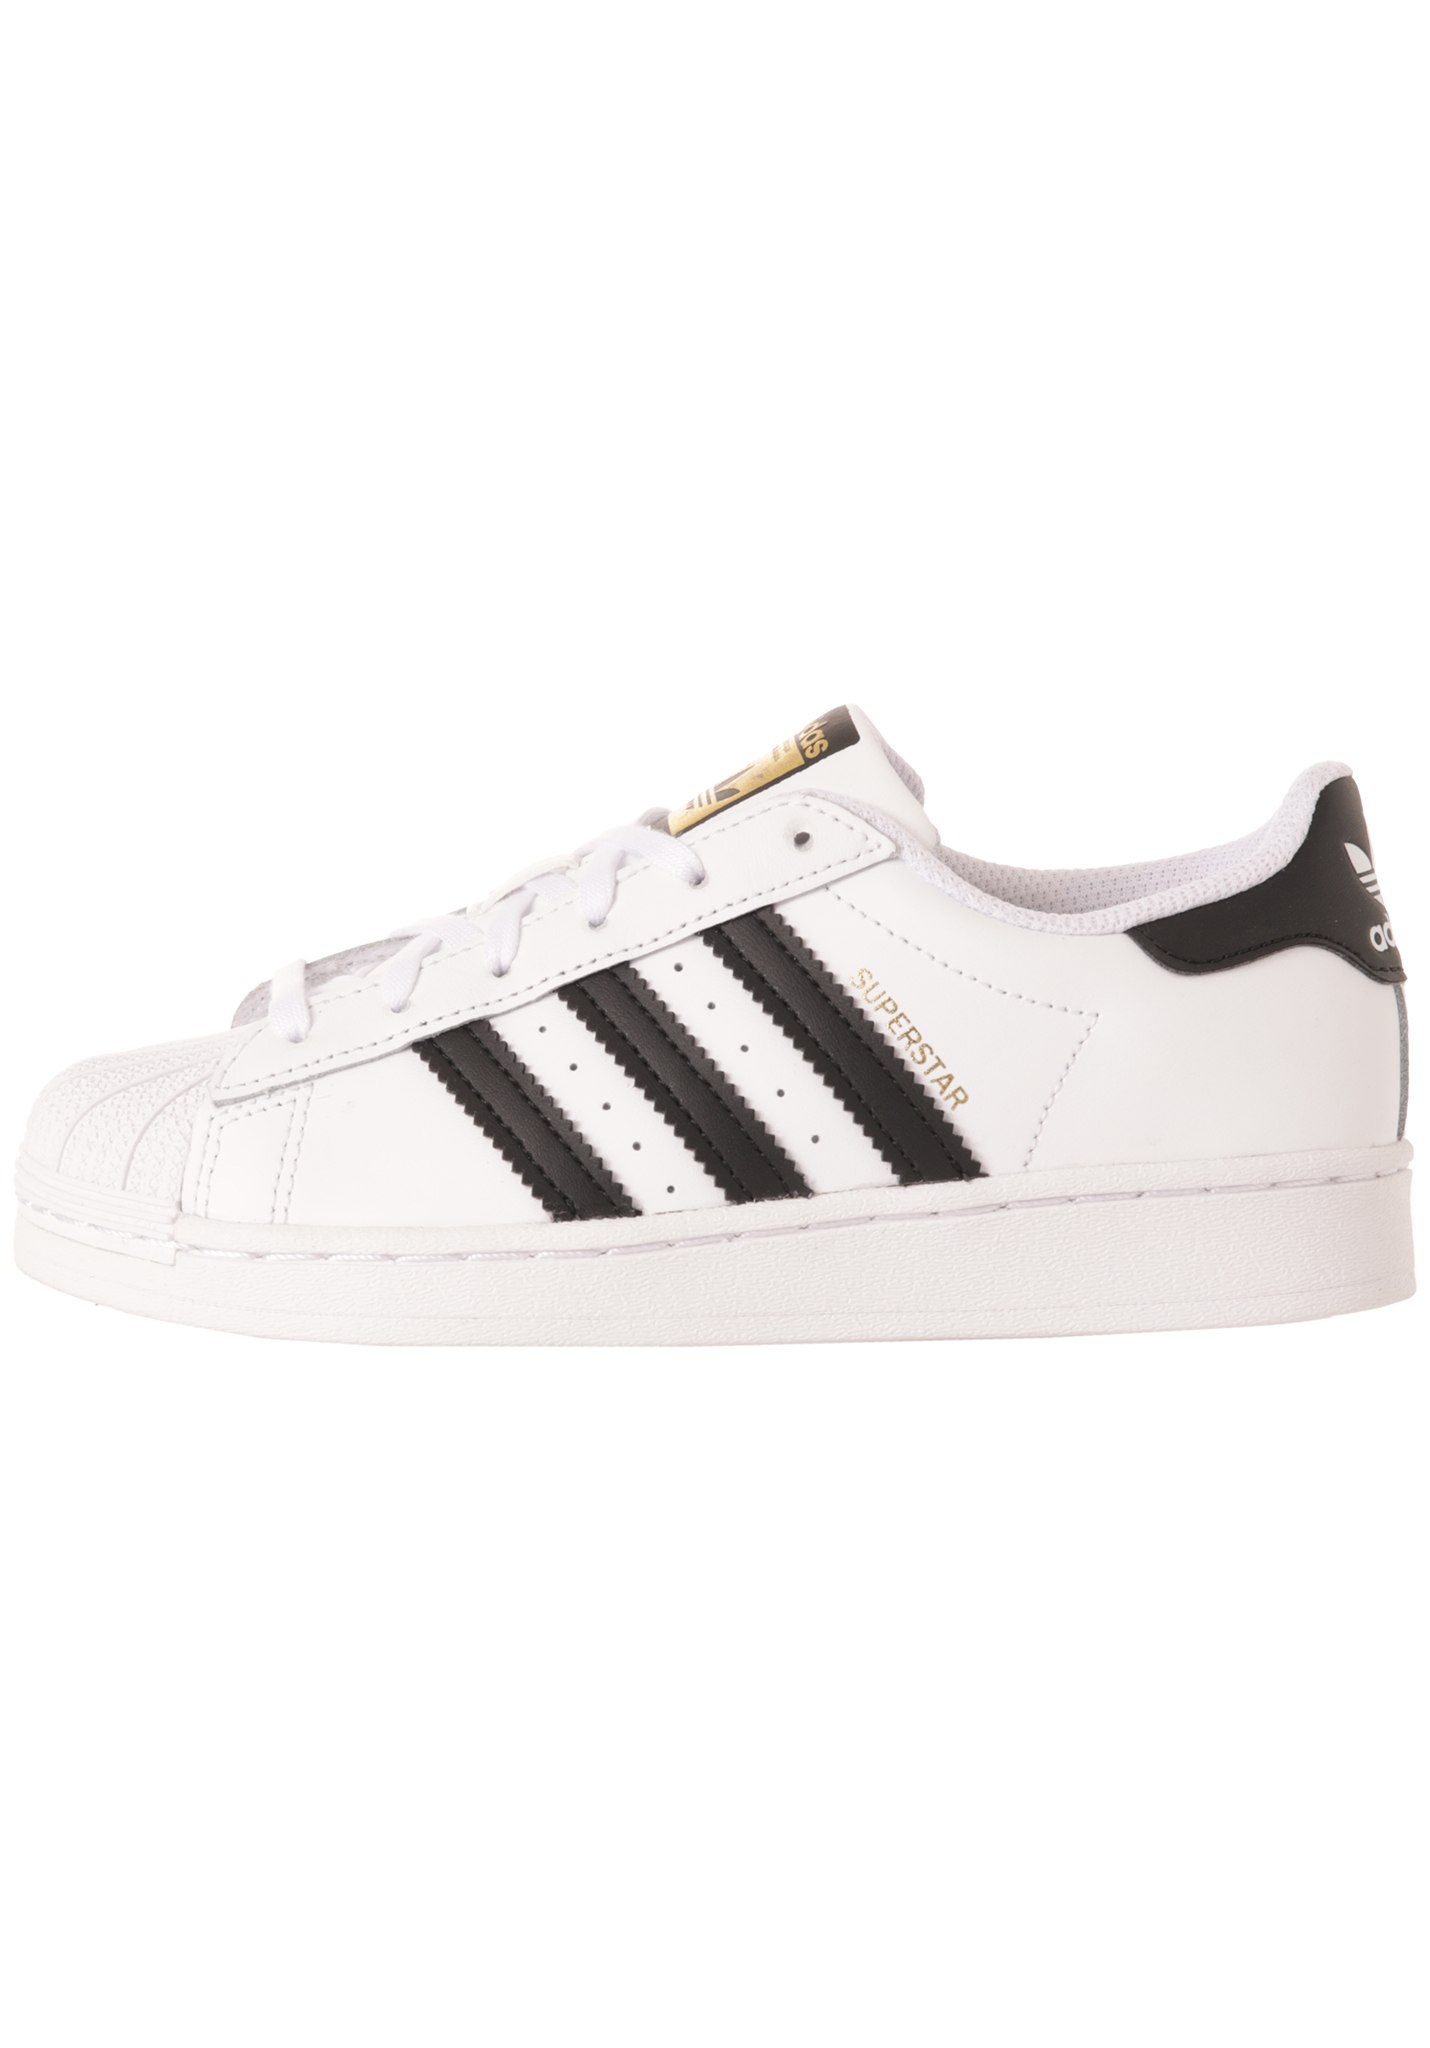 Adidas Originals Superstar C Sneaker Low schuhwerk weiß/core schwarz/weiß 33